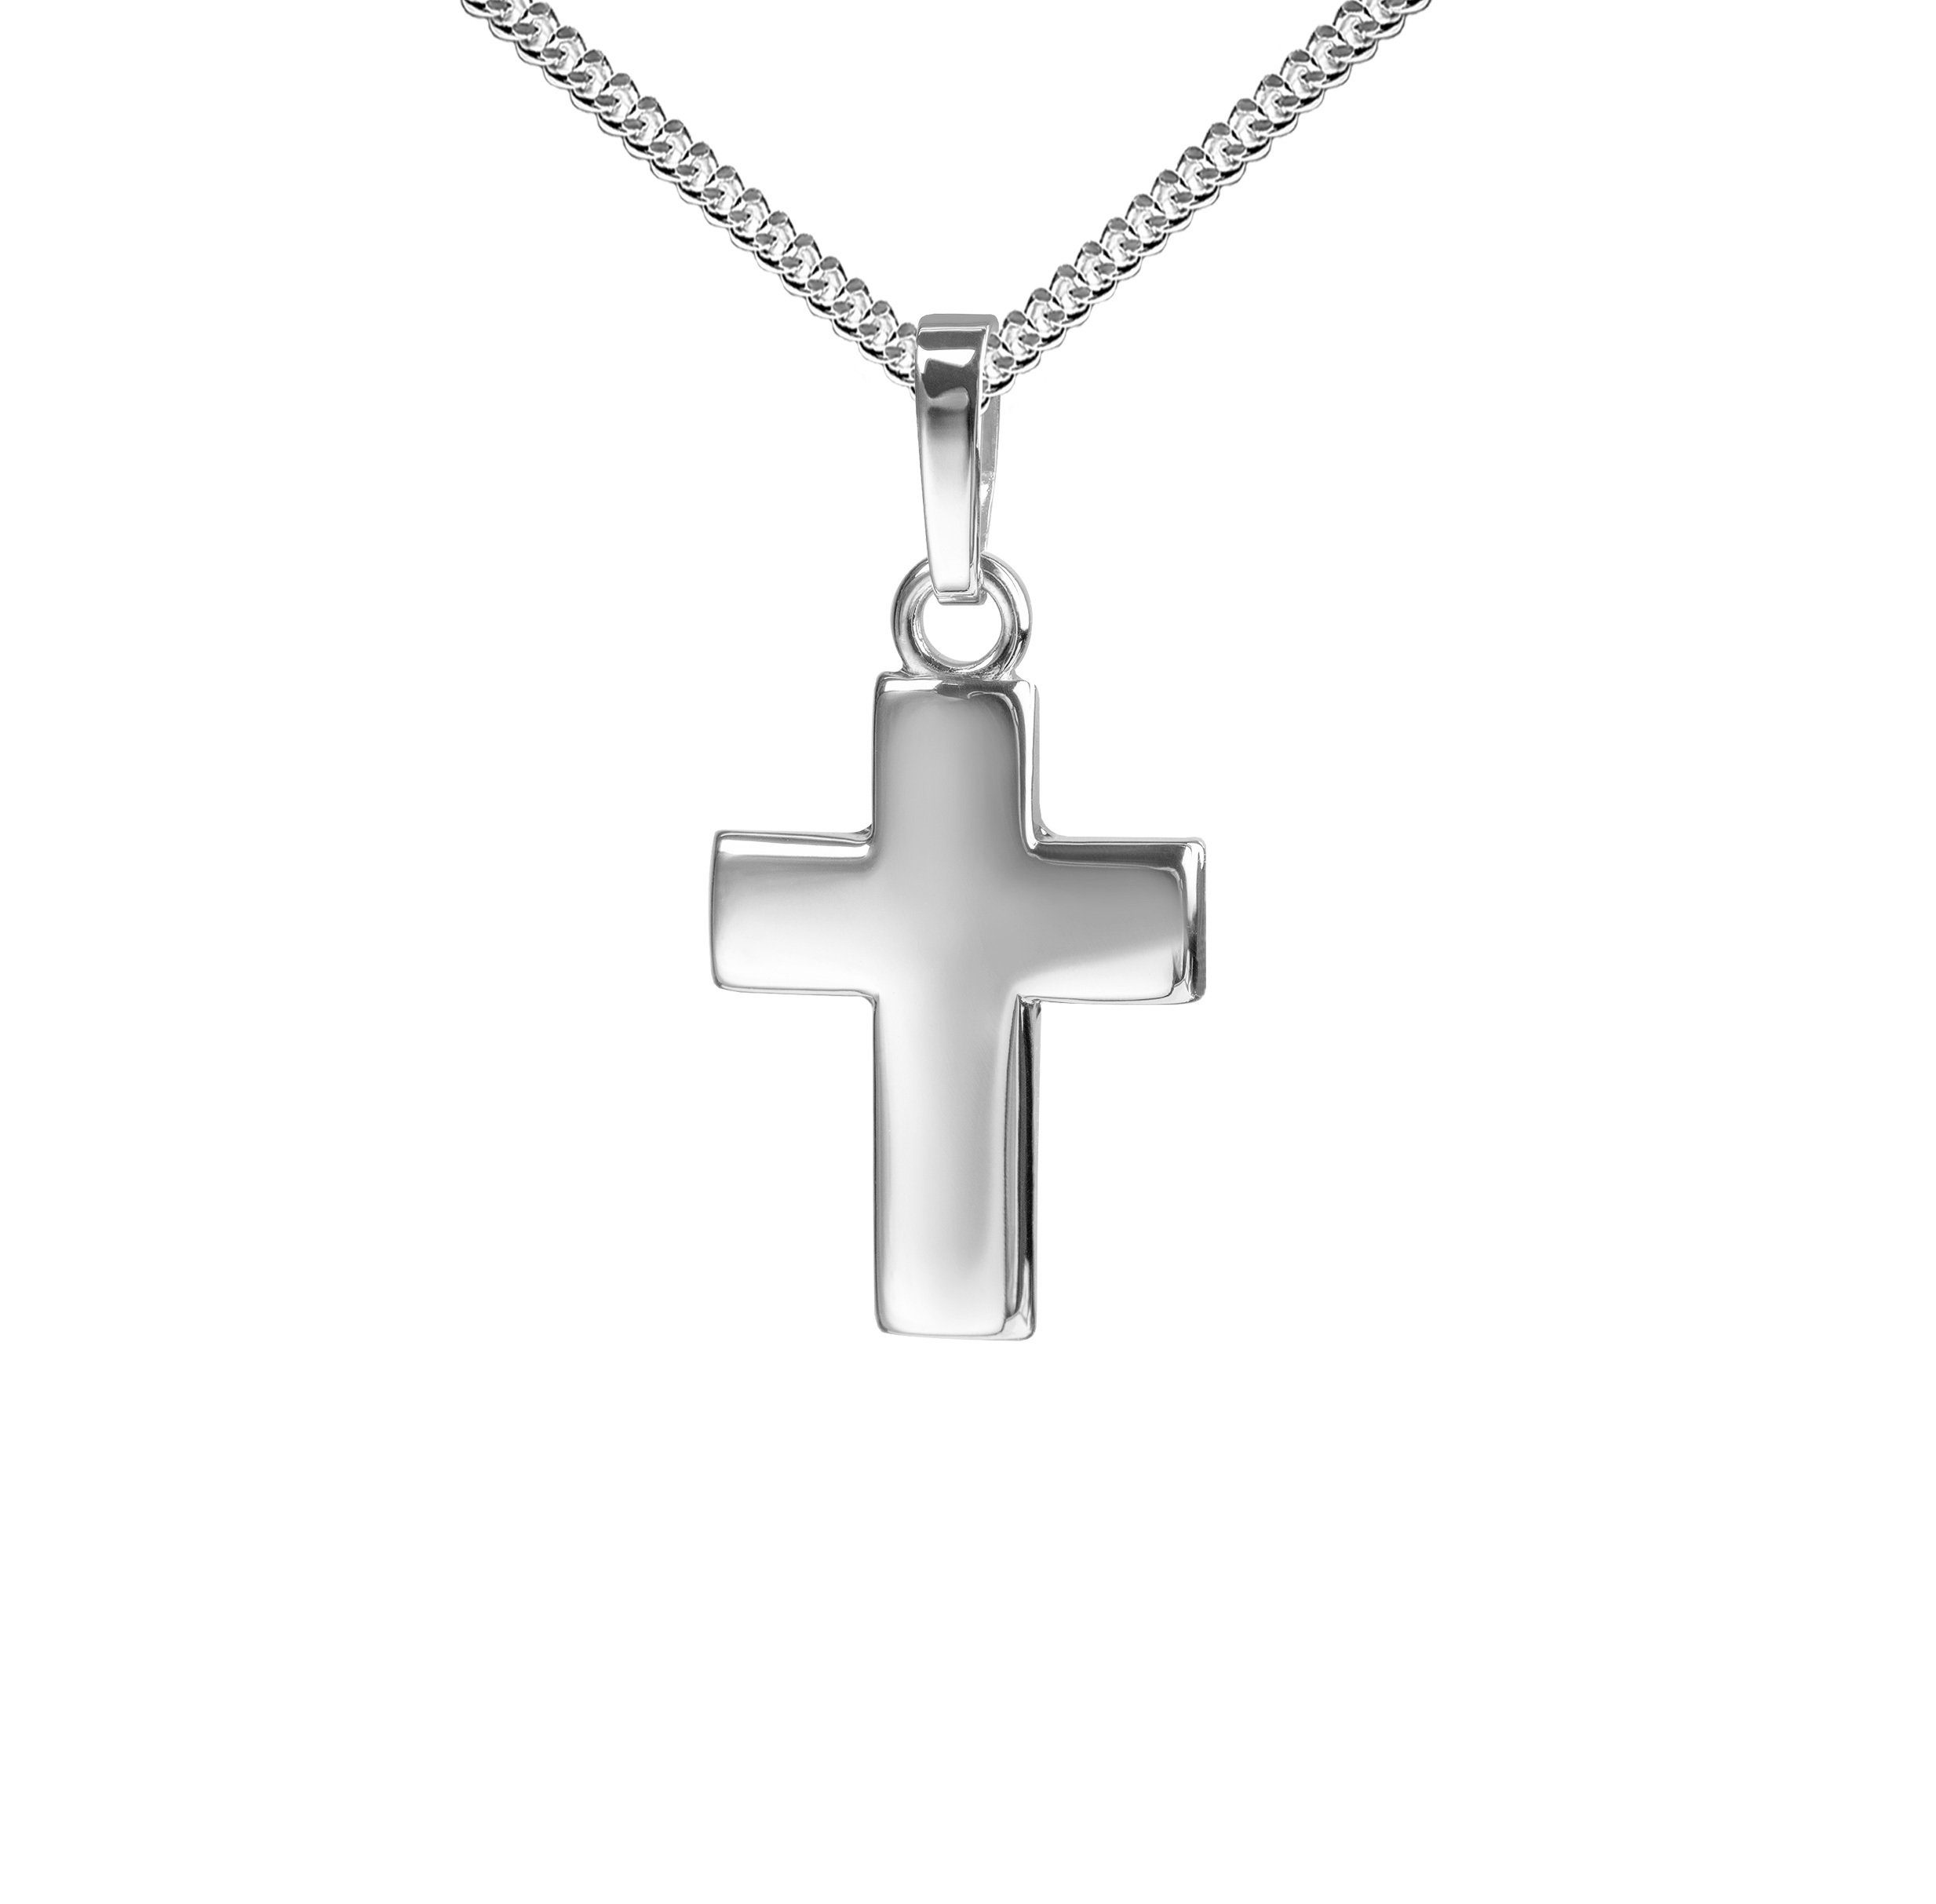 JEVELION Kreuzkette Kreuzanhänger 925 Silberkreuz - Made in Germany (Silberanhänger, für Damen und Kinder), Mit Silberkette 925 - Länge wählbar 36 - 70 cm oder ohne Kette.